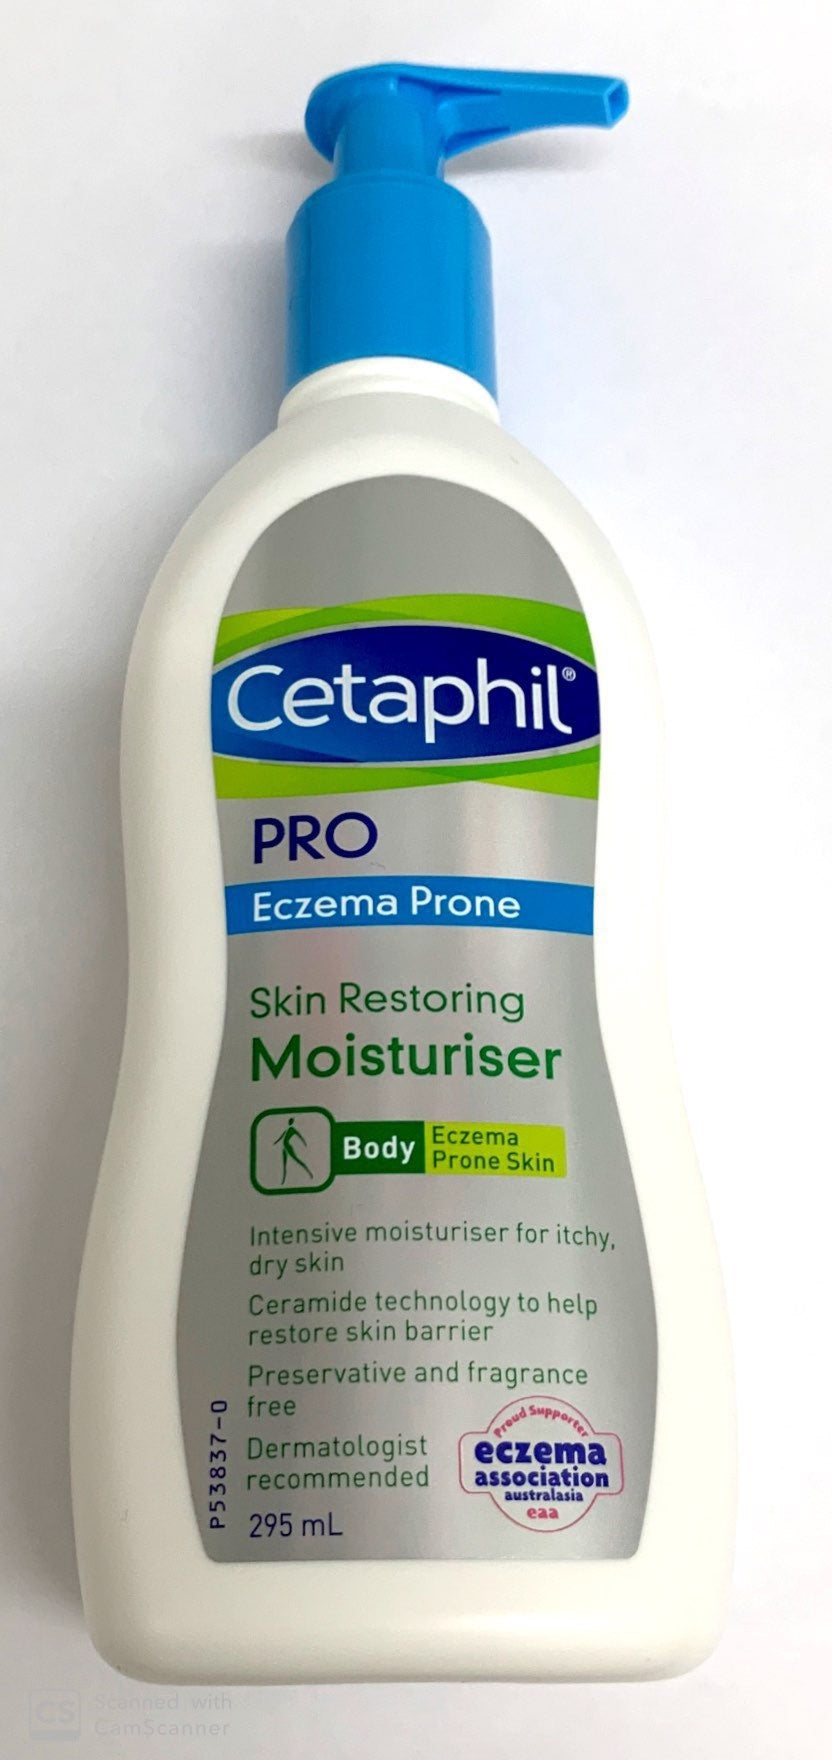 Cetaphil Pro Eczema Prone Skin Restoring Body Moisturiser 295ml - Pakuranga Pharmacy